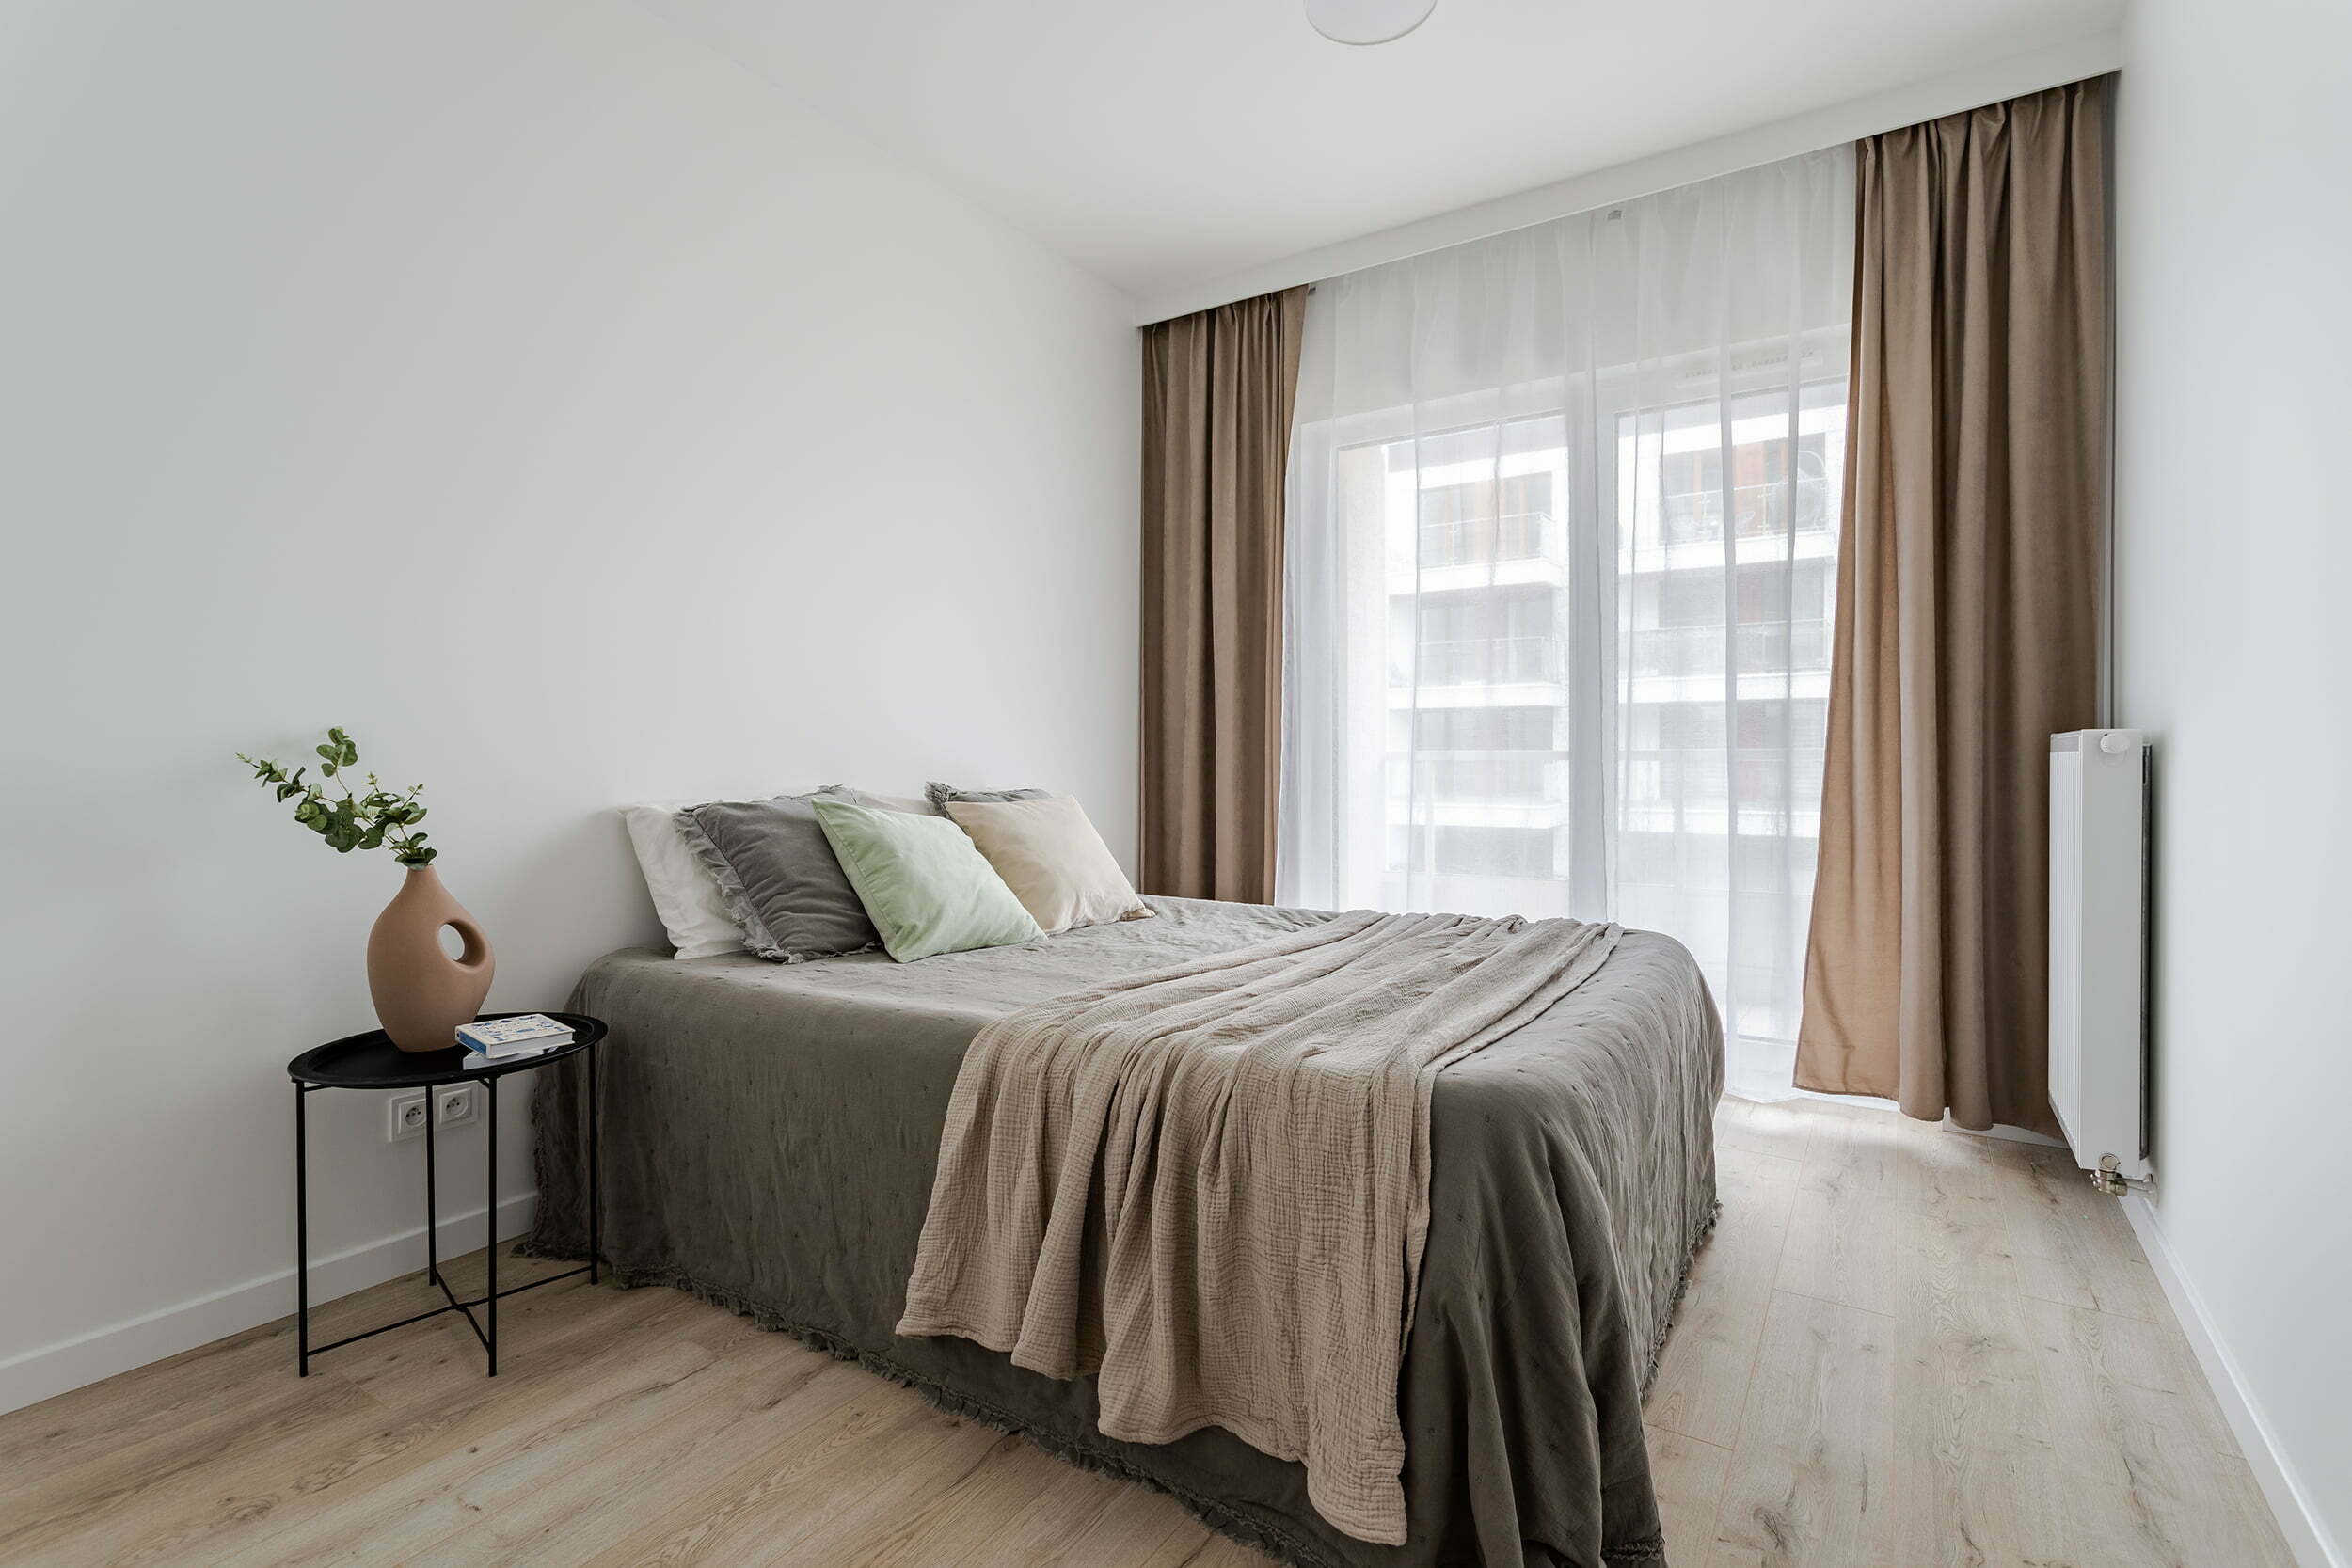 sypialnia duża biała z ciemnymi elementami minimalistyczna aranżacja Beata Kołodziejczyk